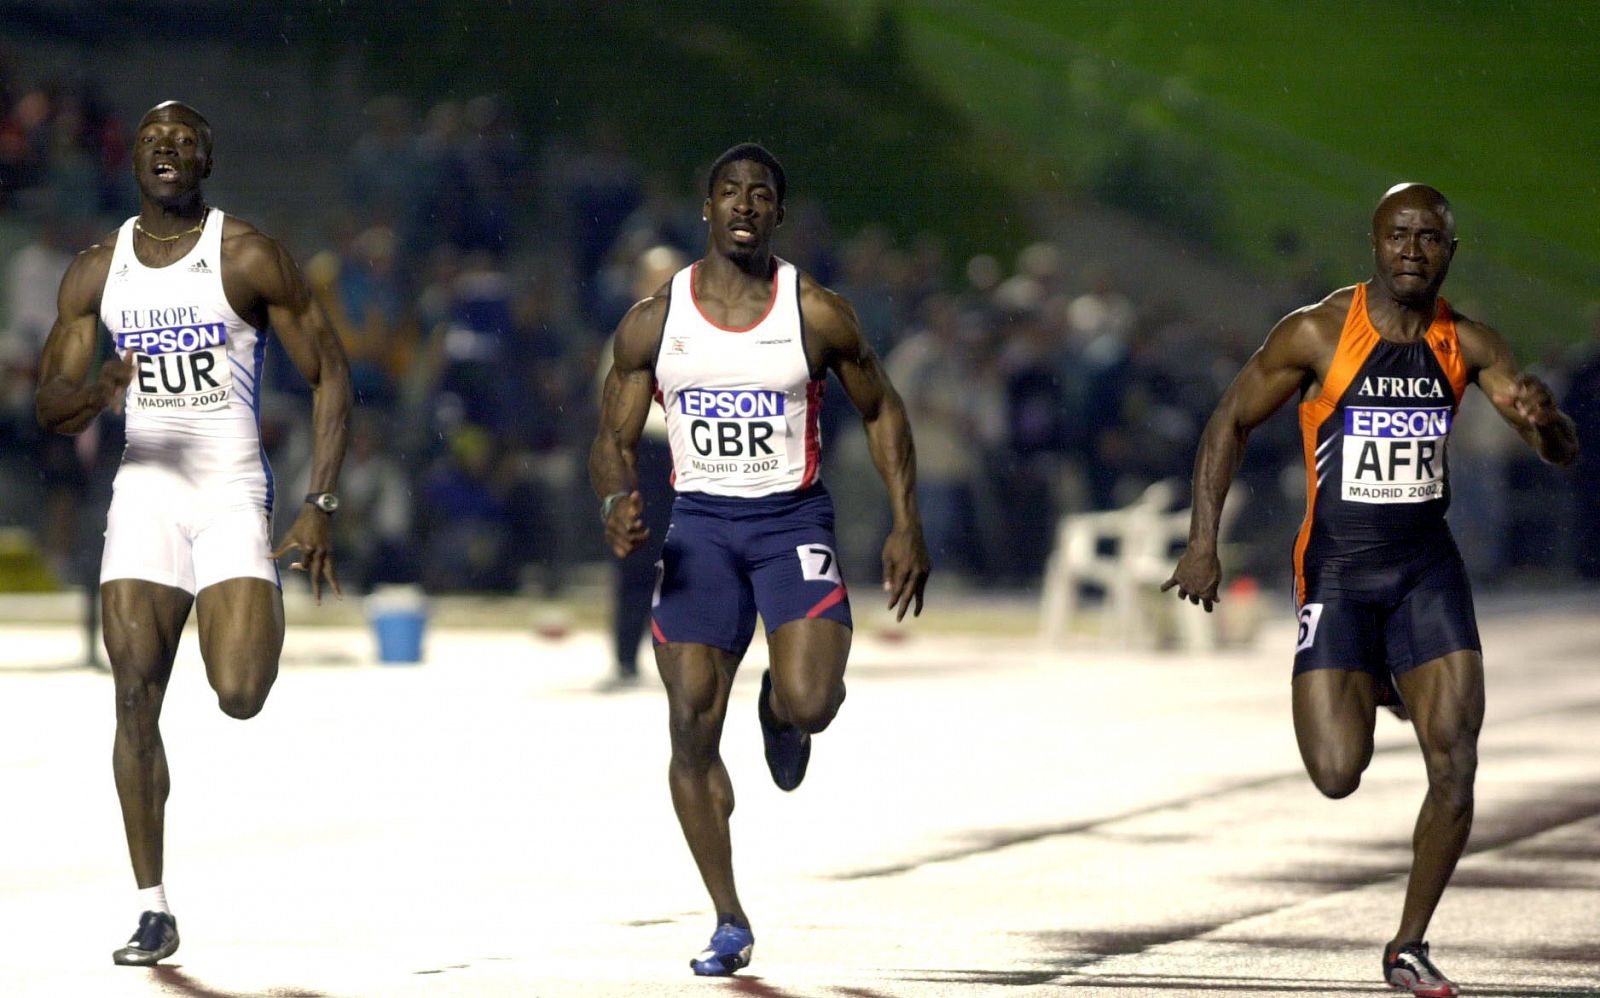 Velocistas de los equipos de Europa, Reino Unido y África en una prueba de la Copa del Mundo de Atletismo de Madrid 2002. De izquierda a derecha, Francis Obikwelu, Dwain Chambers y Uchena Emedolu (ganador).